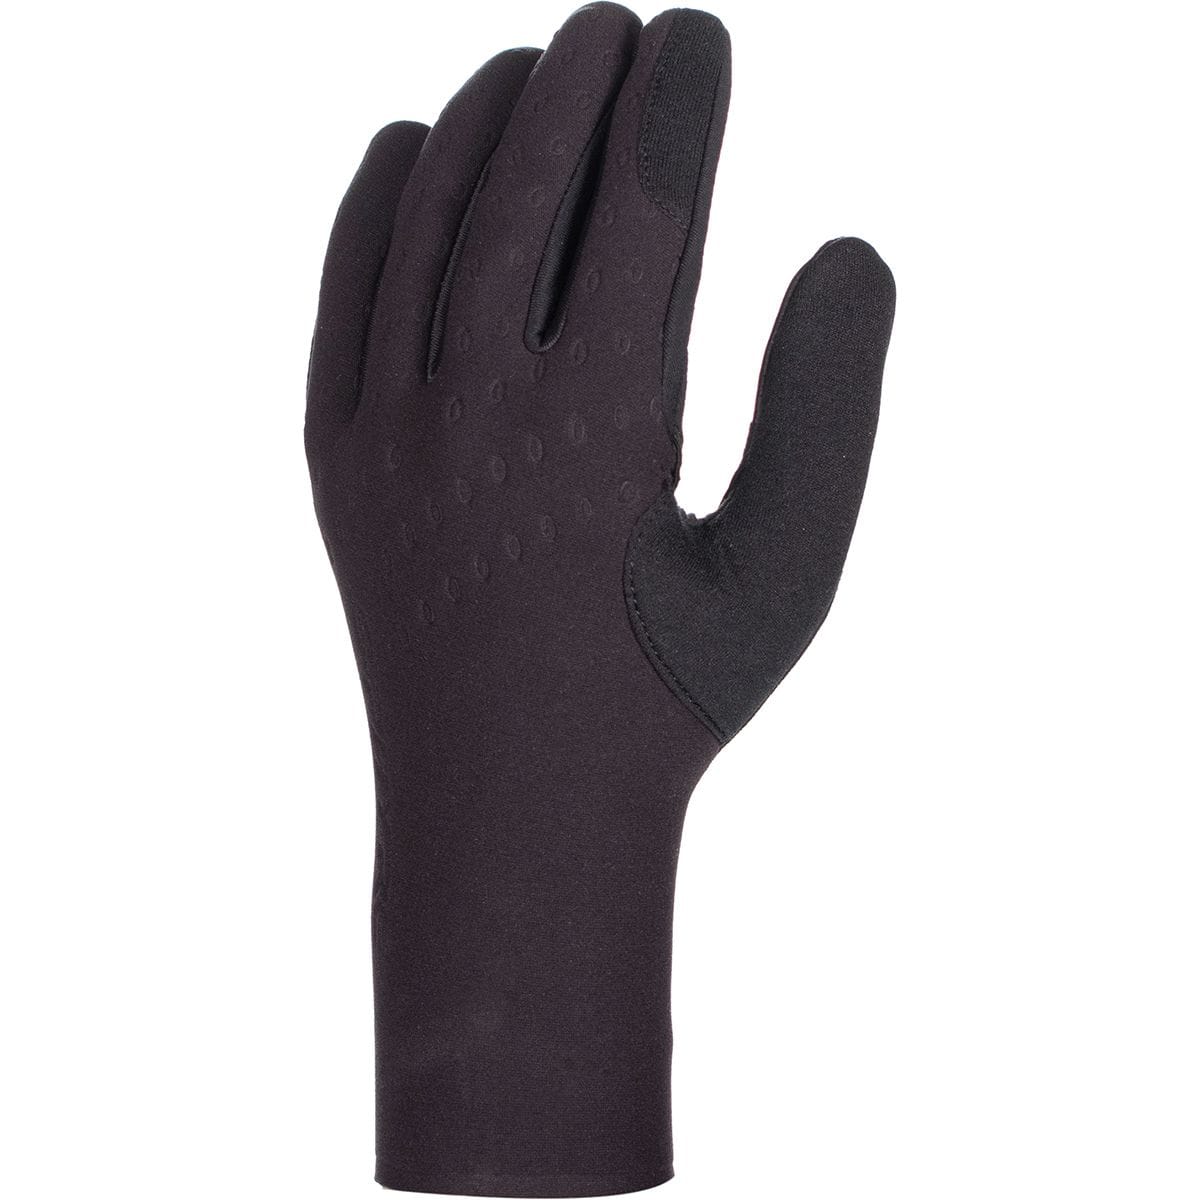 Shimano S-Phyre Winter Glove - Men's